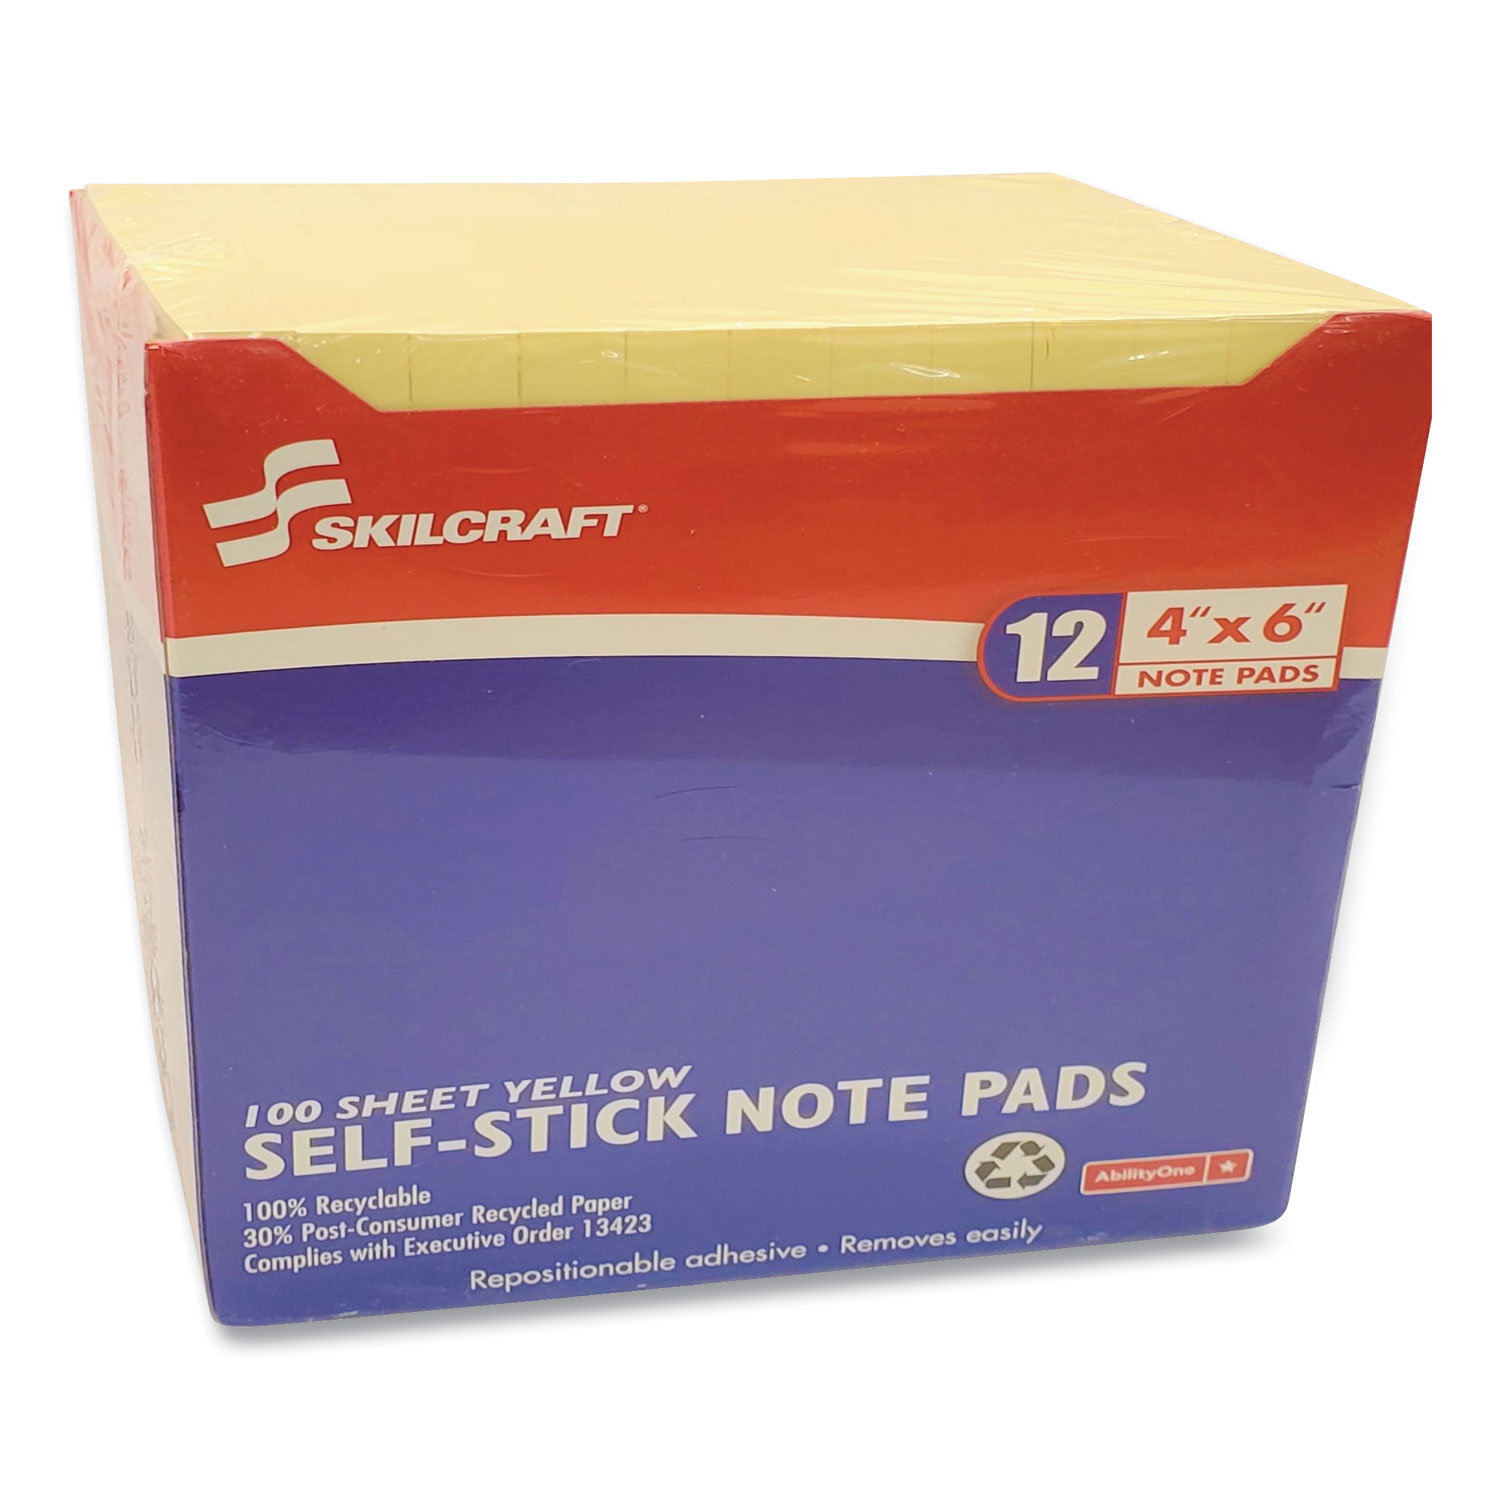 SKILCRAFT Self-Stick Note Pads 3 x 5 Unruled Yellow 100 Sheets Dozen